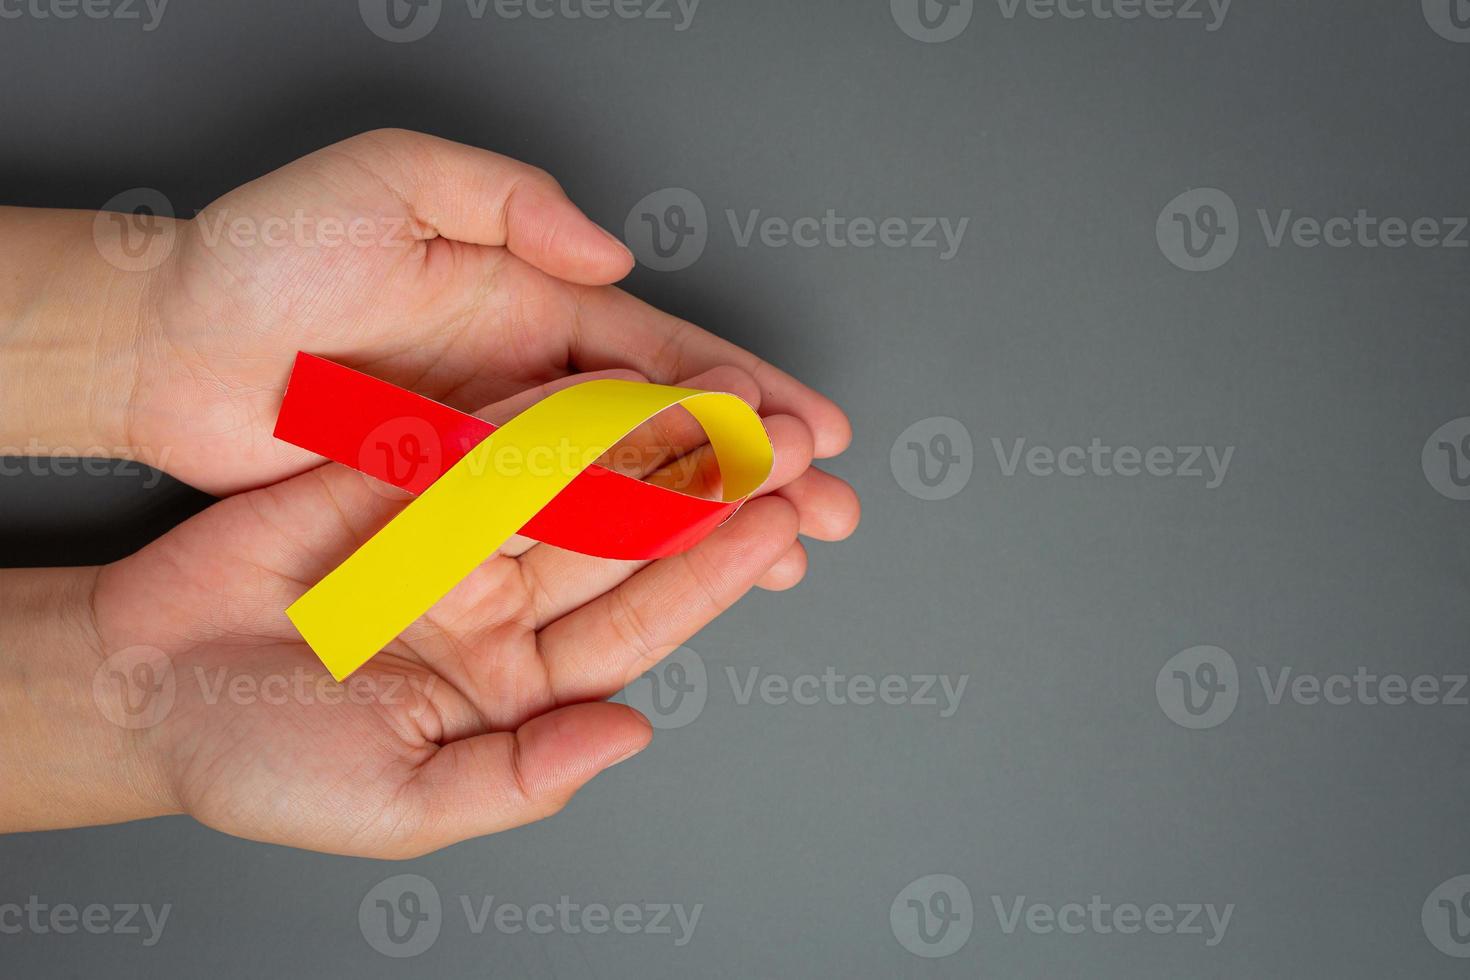 världsmedvetenhet om hepatitdag med rött gult band foto